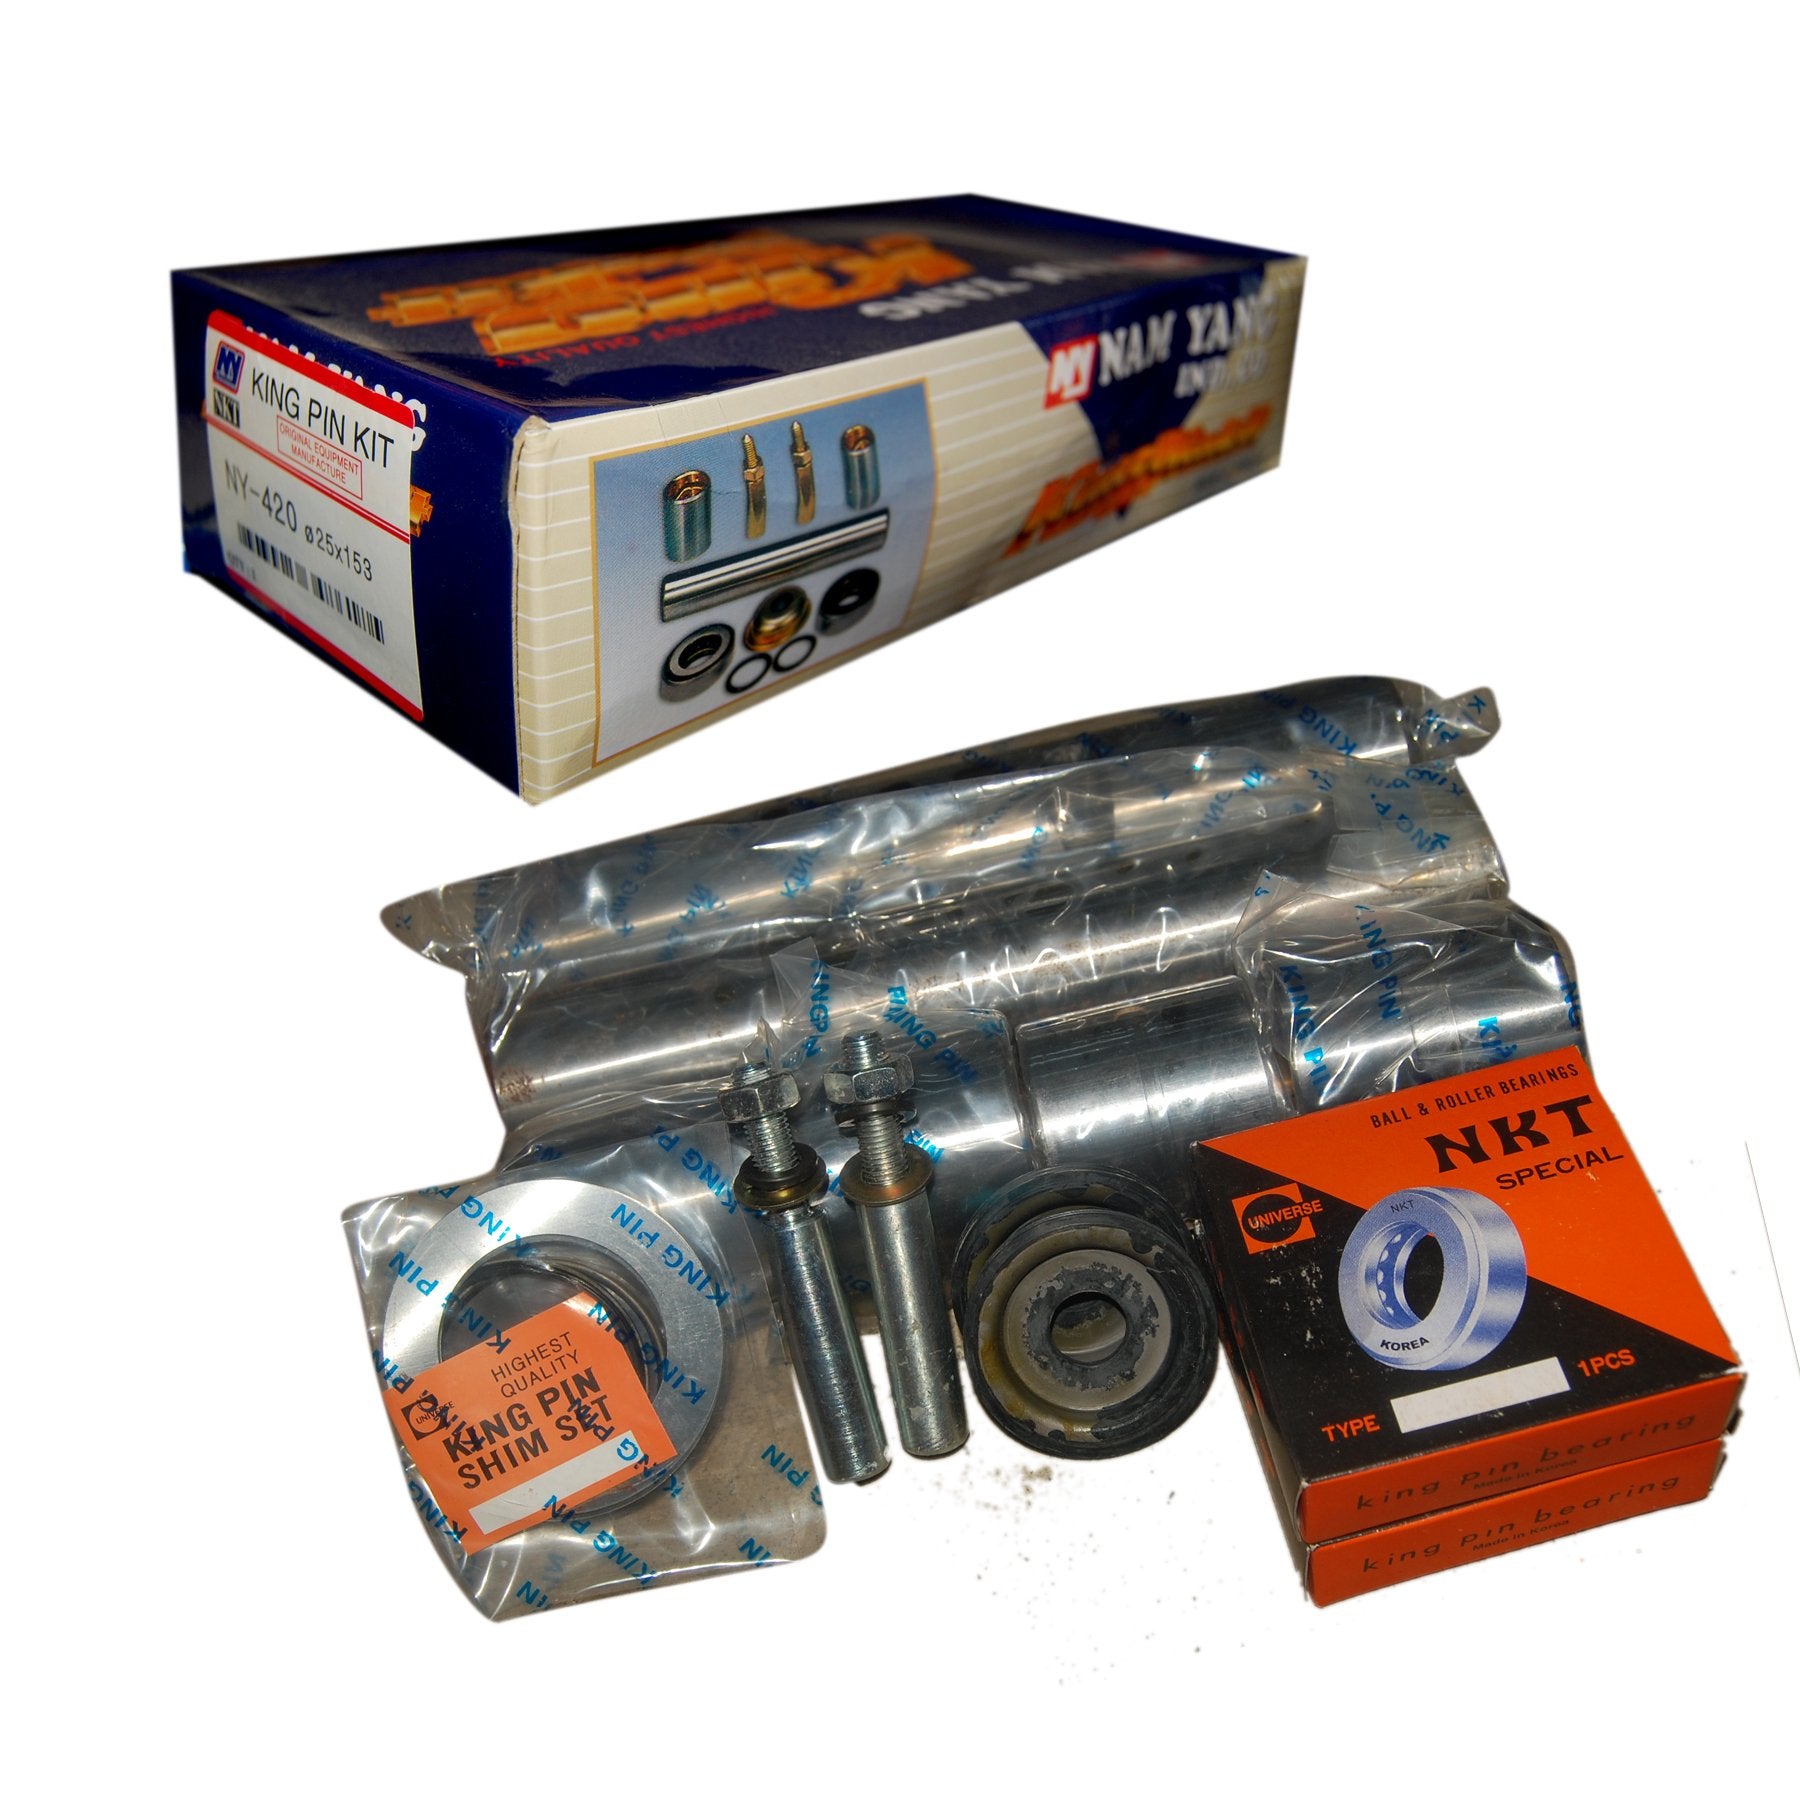 King Pin Kit, NAM YANG, MB294272, NY-534 (003141) - Win Store